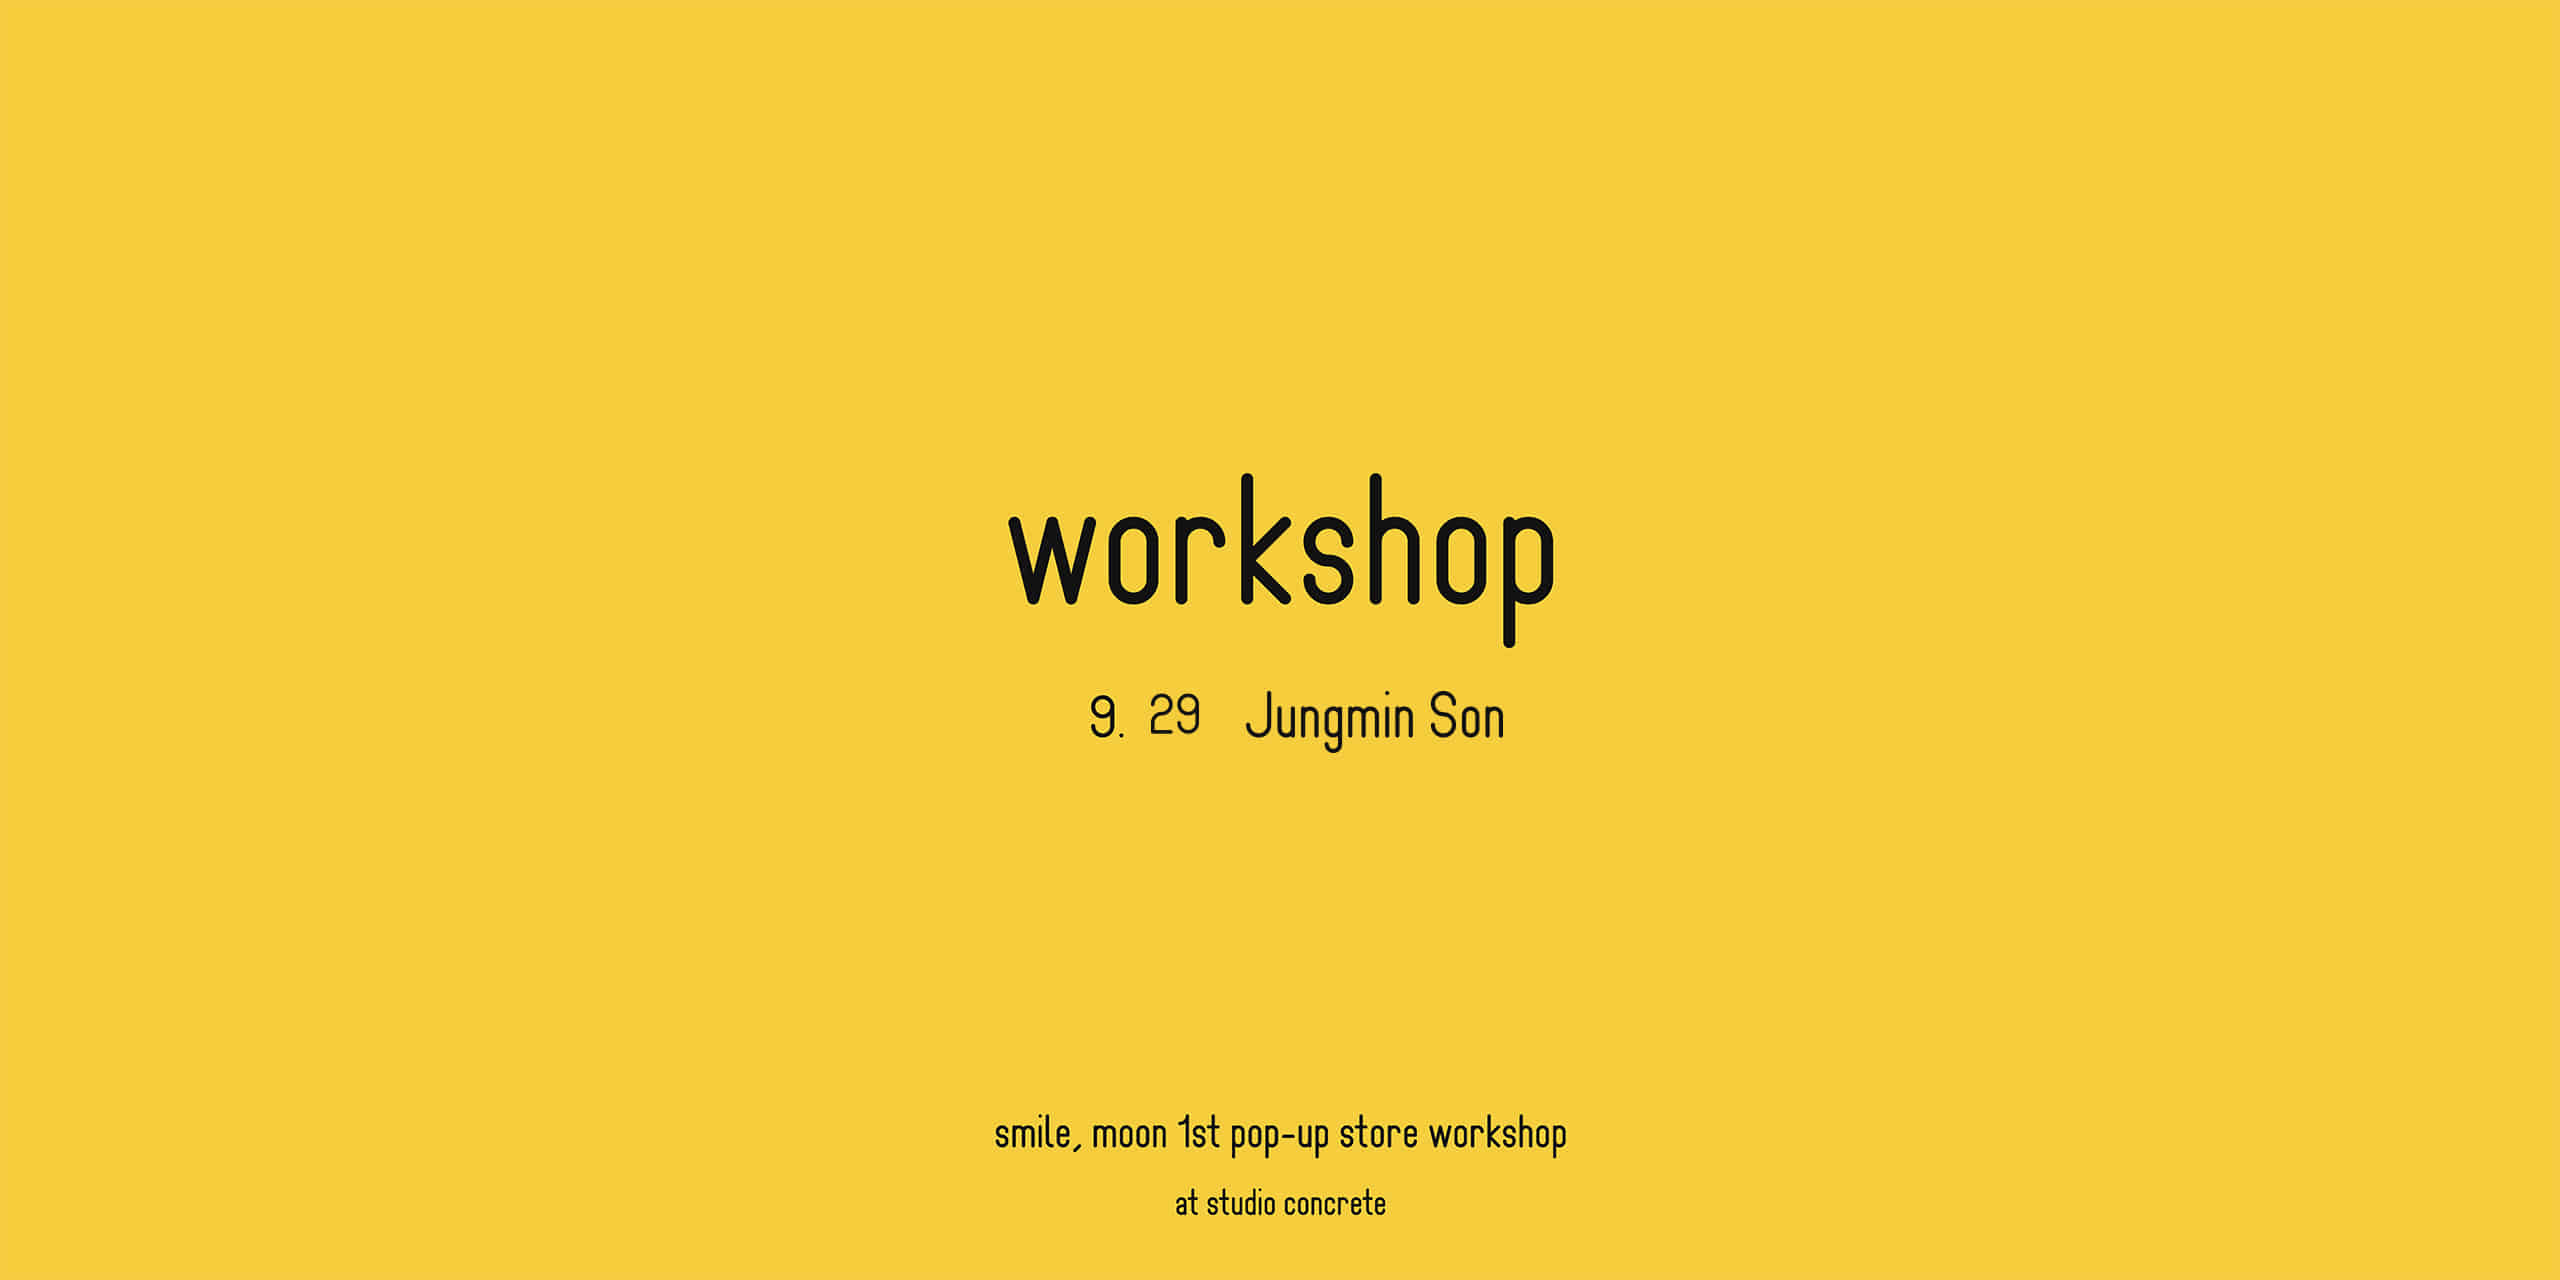 Jungmin Son workshop